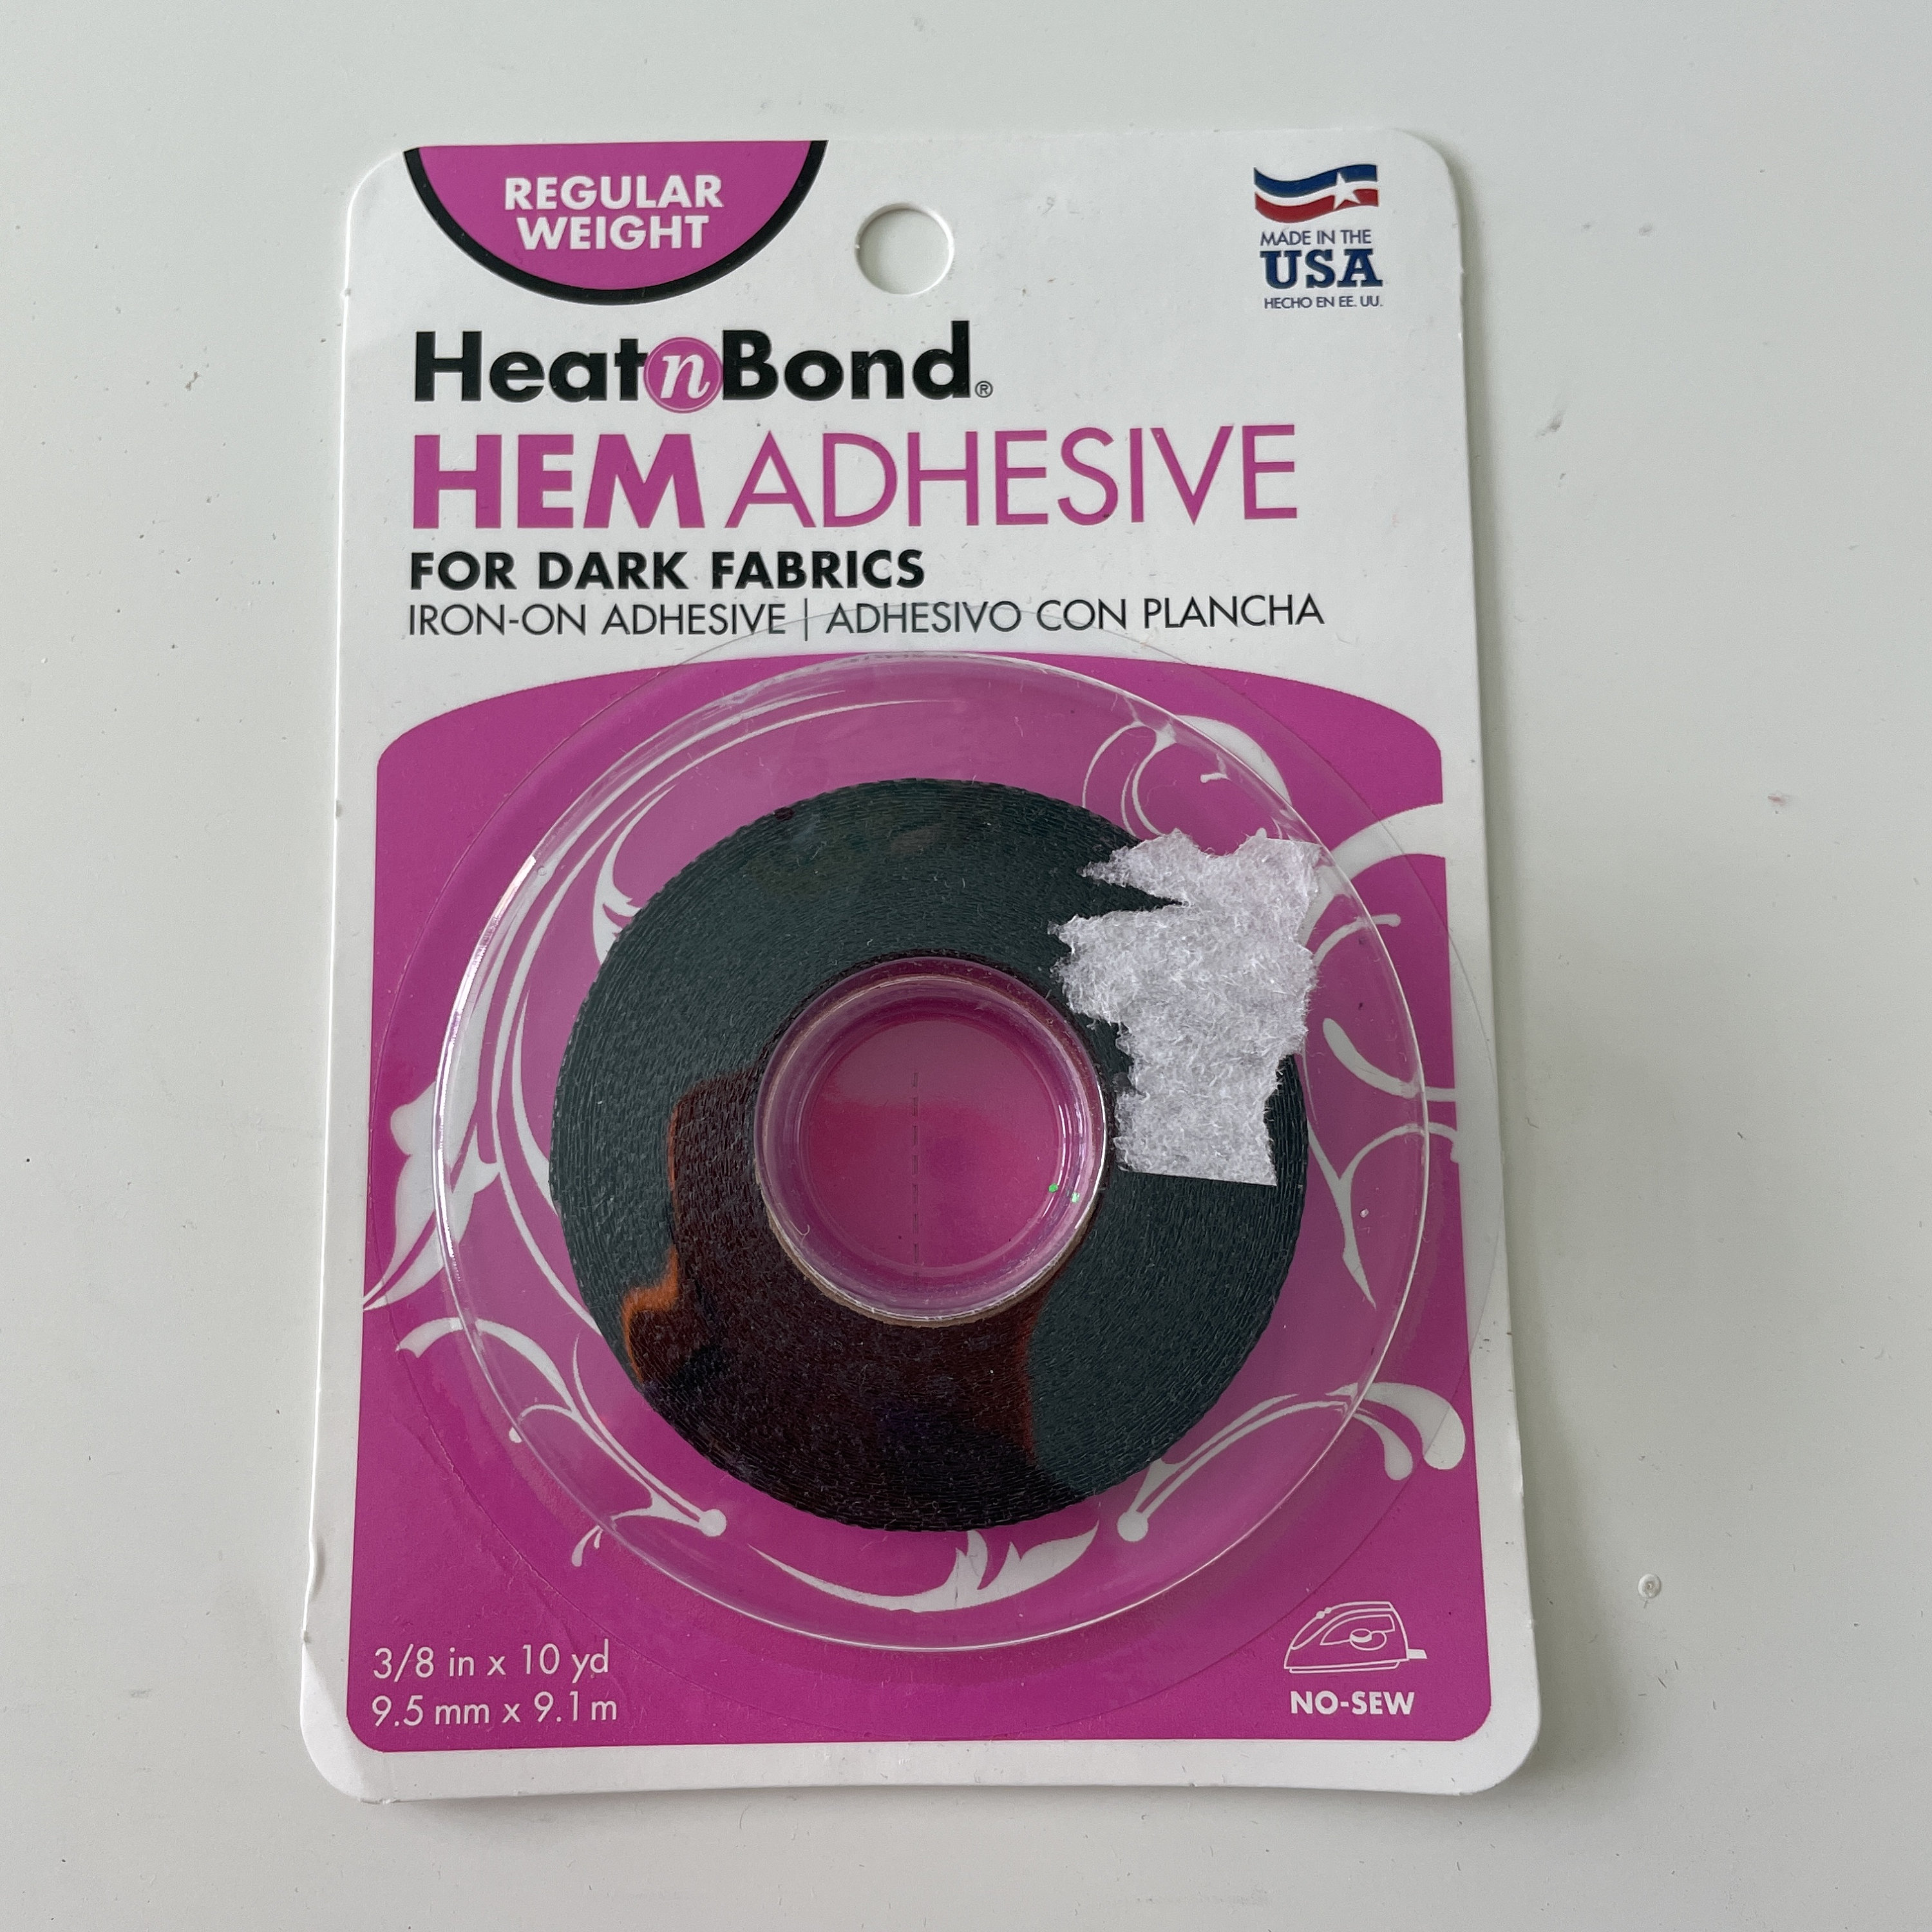 Heat n Bond Ultrahold Double Sided Iron-on Adhesive - HeatnBond